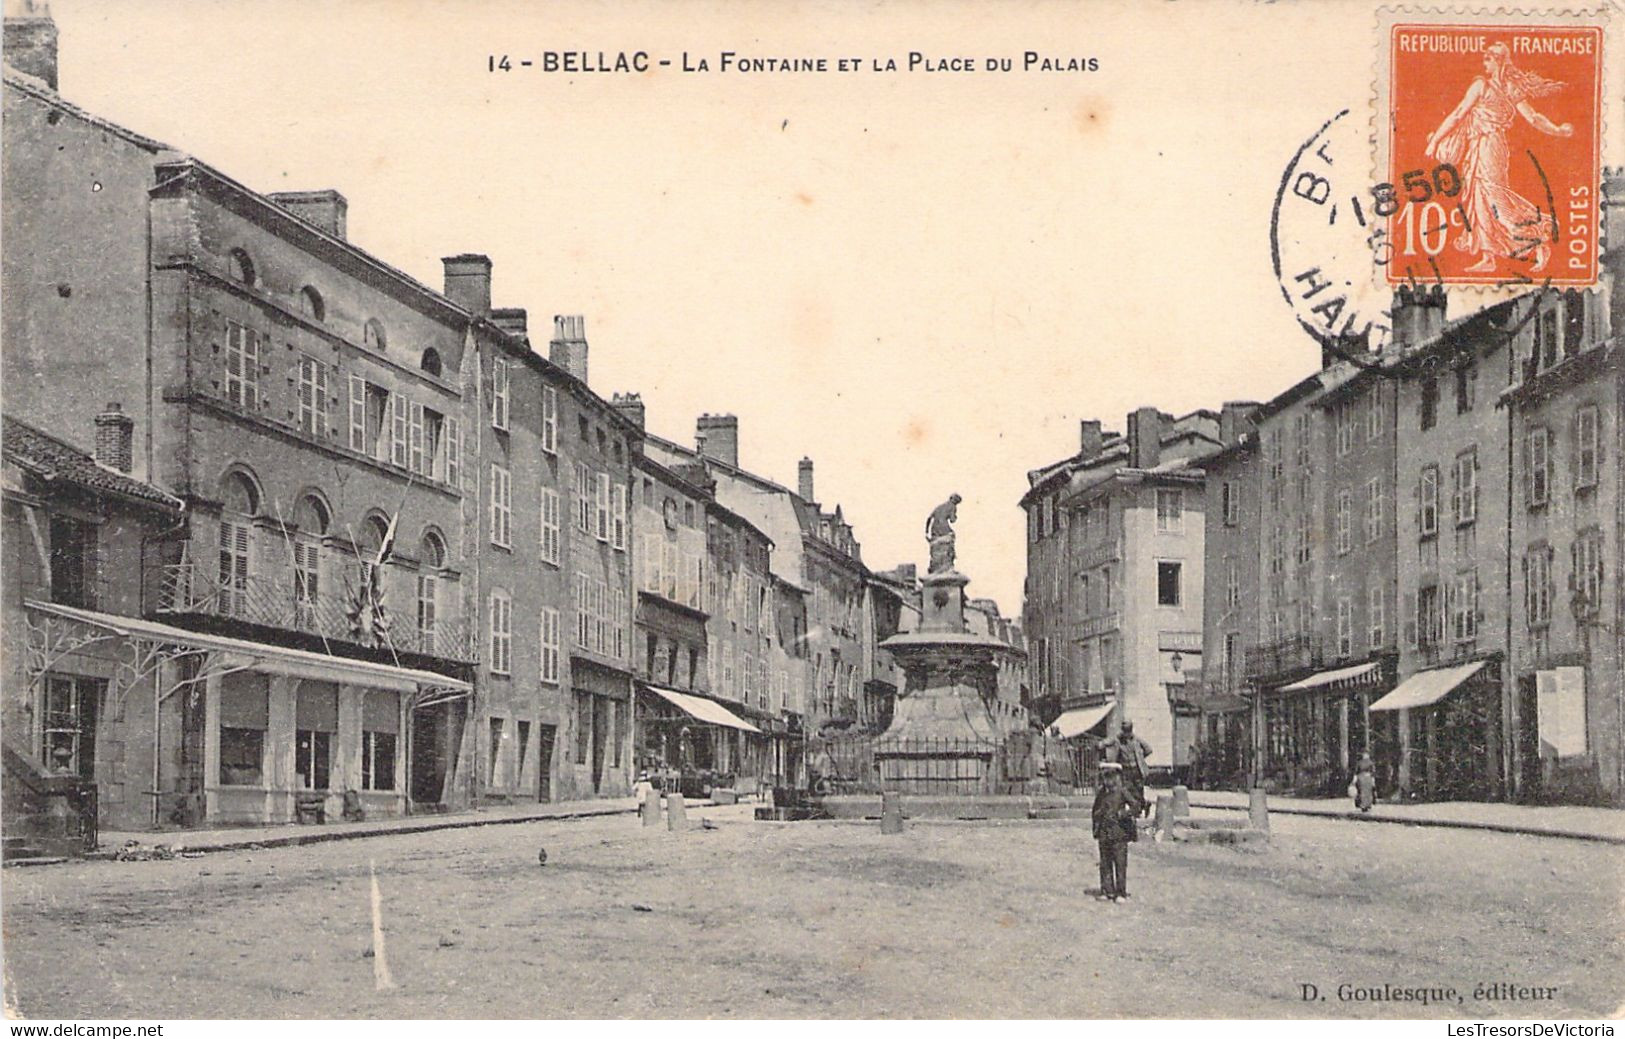 Bellac  - La Fontaine Et La Place Du Palais - Oblitéré à Bellac Le 5 Janvier 1911 -  BAISSE DE PRIX - Bellac